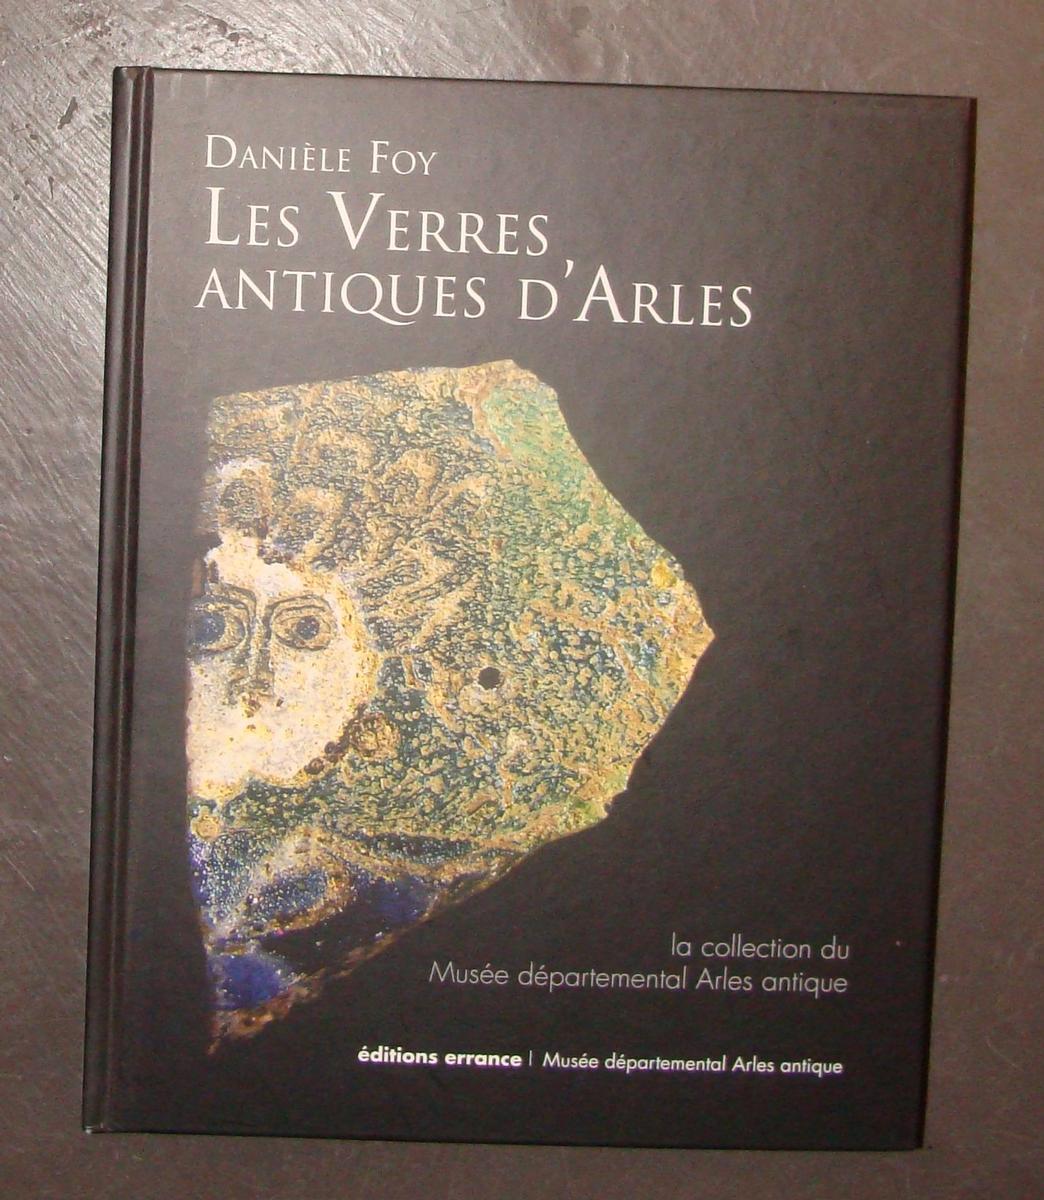 Les verres antiques d'Arles, catalogue exhaustif des verres antiques du Musée départemental Arles antique.